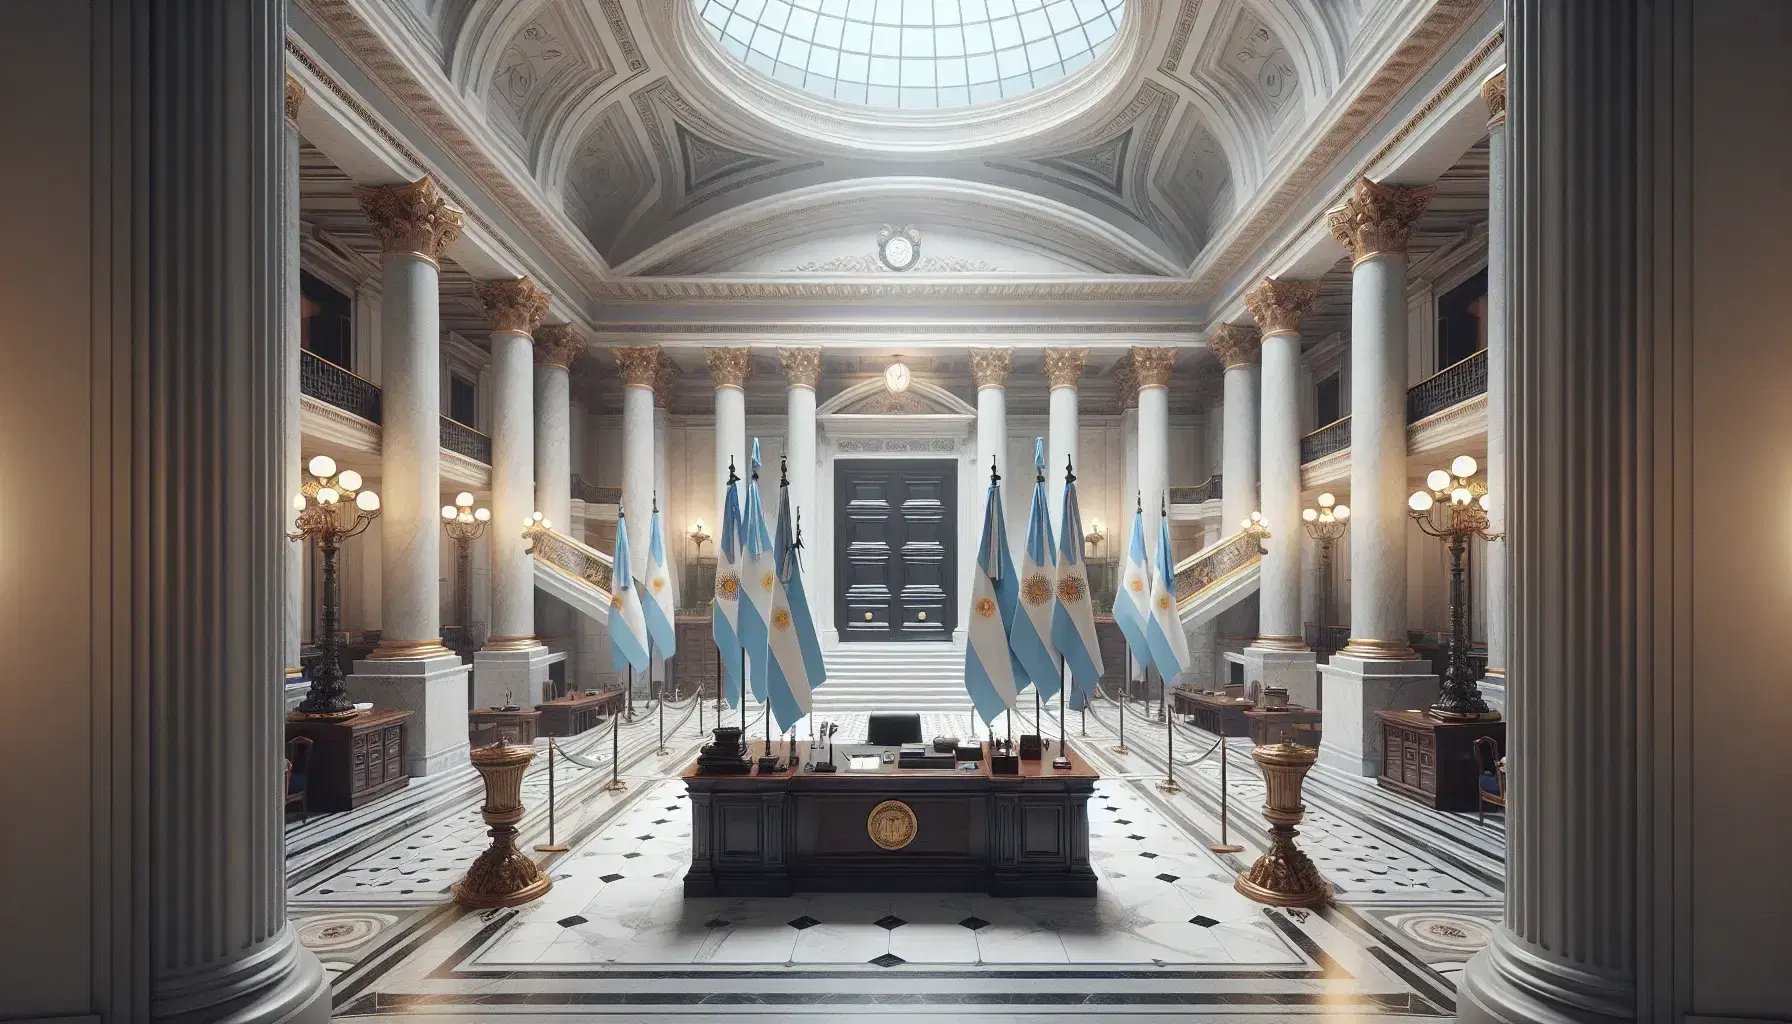 Sala neoclásica de edificio gubernamental con columnas de mármol, escalera, banderas argentinas, escritorio de madera y sillas de cuero rojo.